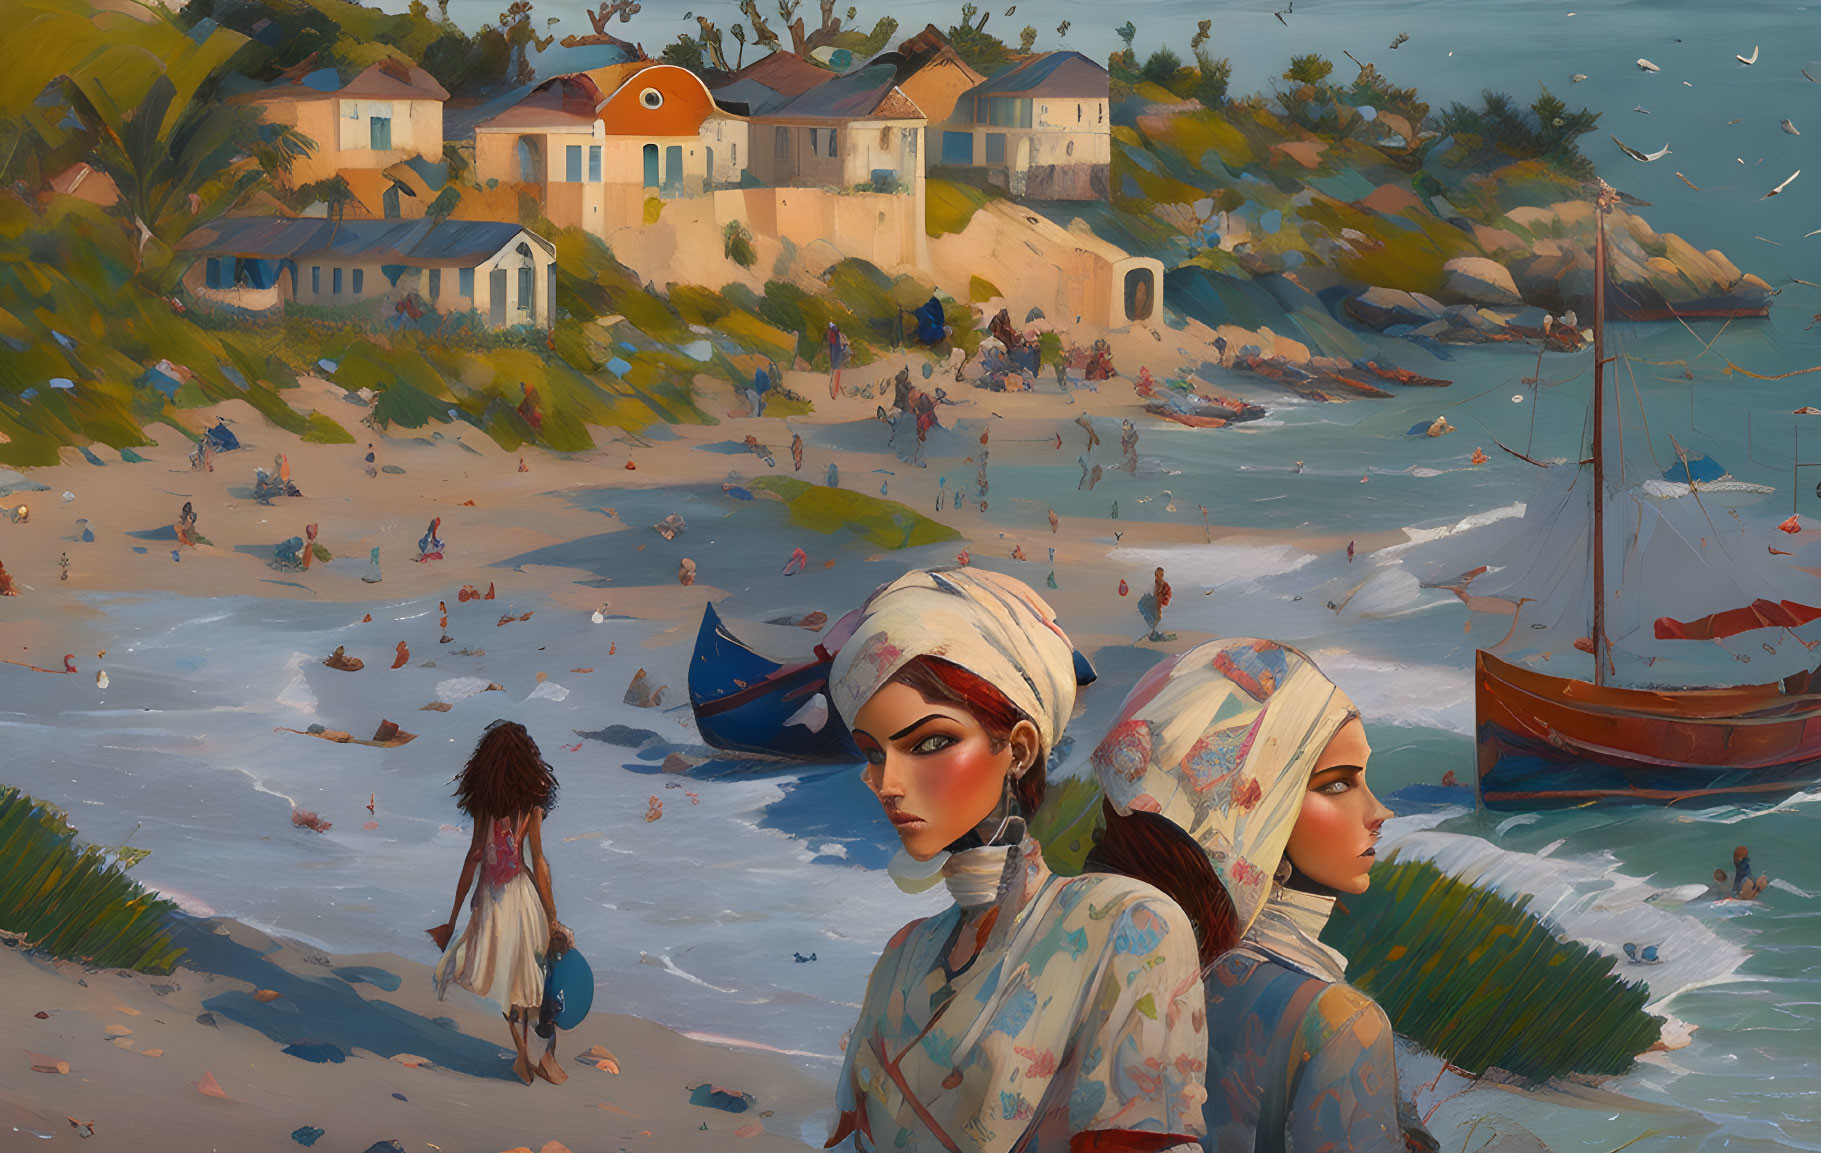 Chicos en la playa painting by Joaquín Sorolla